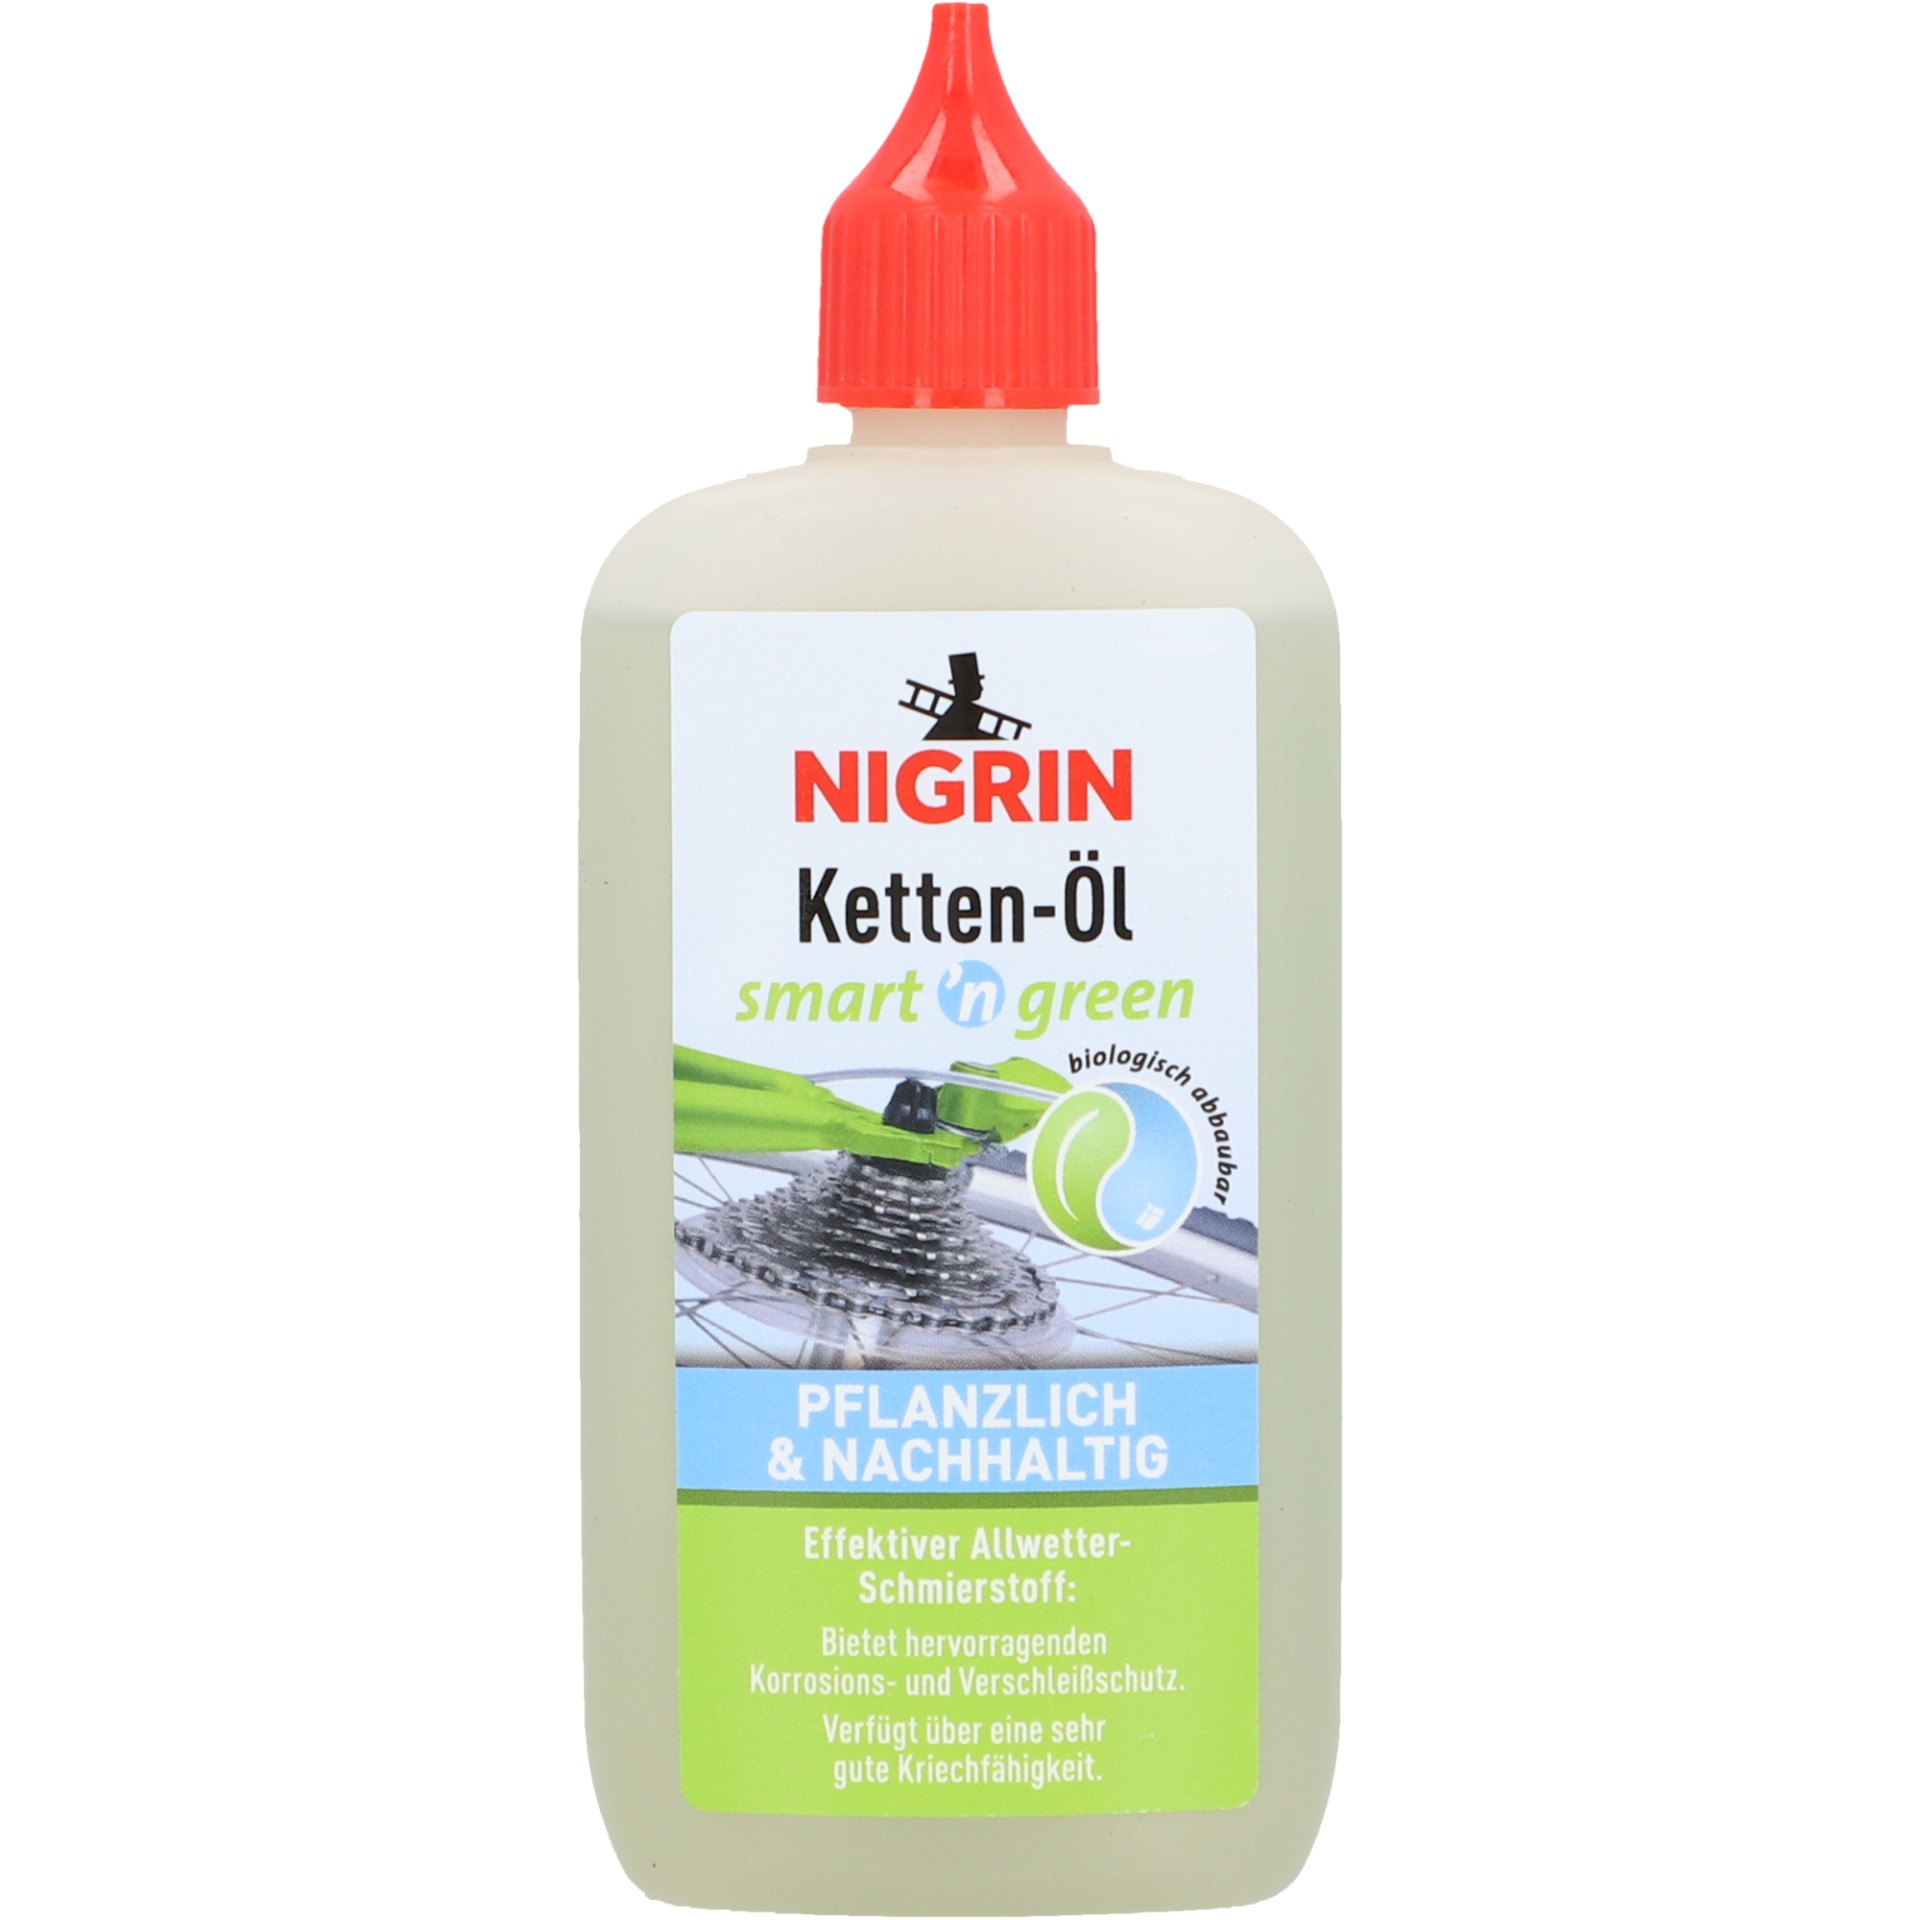 NIGRIN smart ’n green Ketten-Öl (100 ml)  0.1L